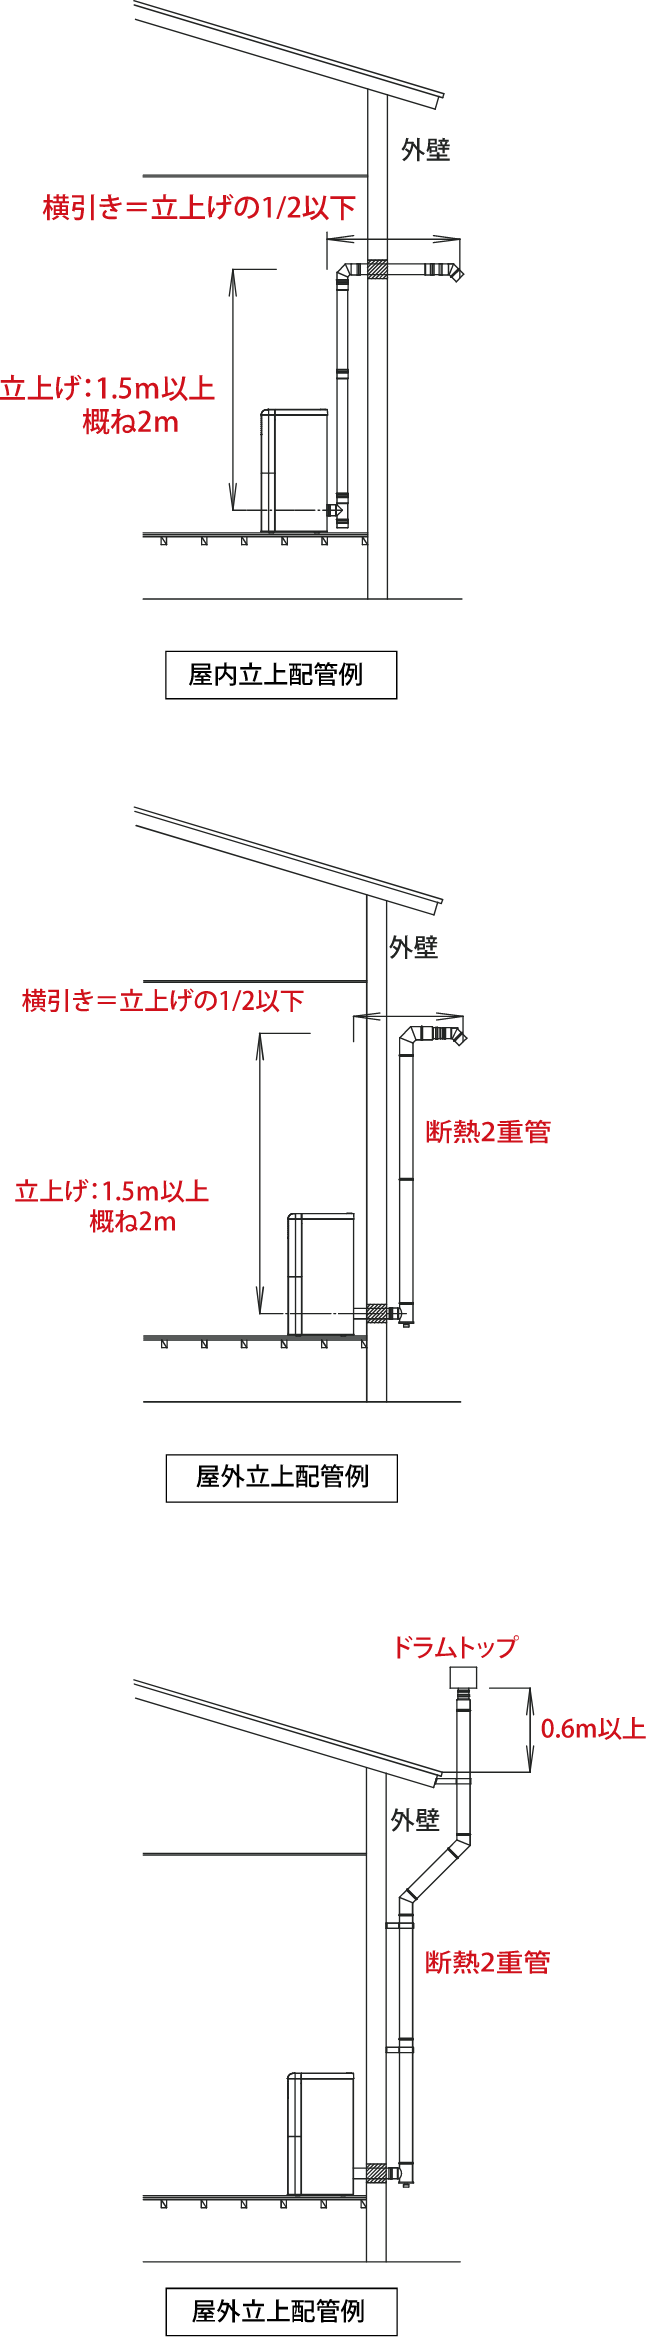 煙突の設置方法の図